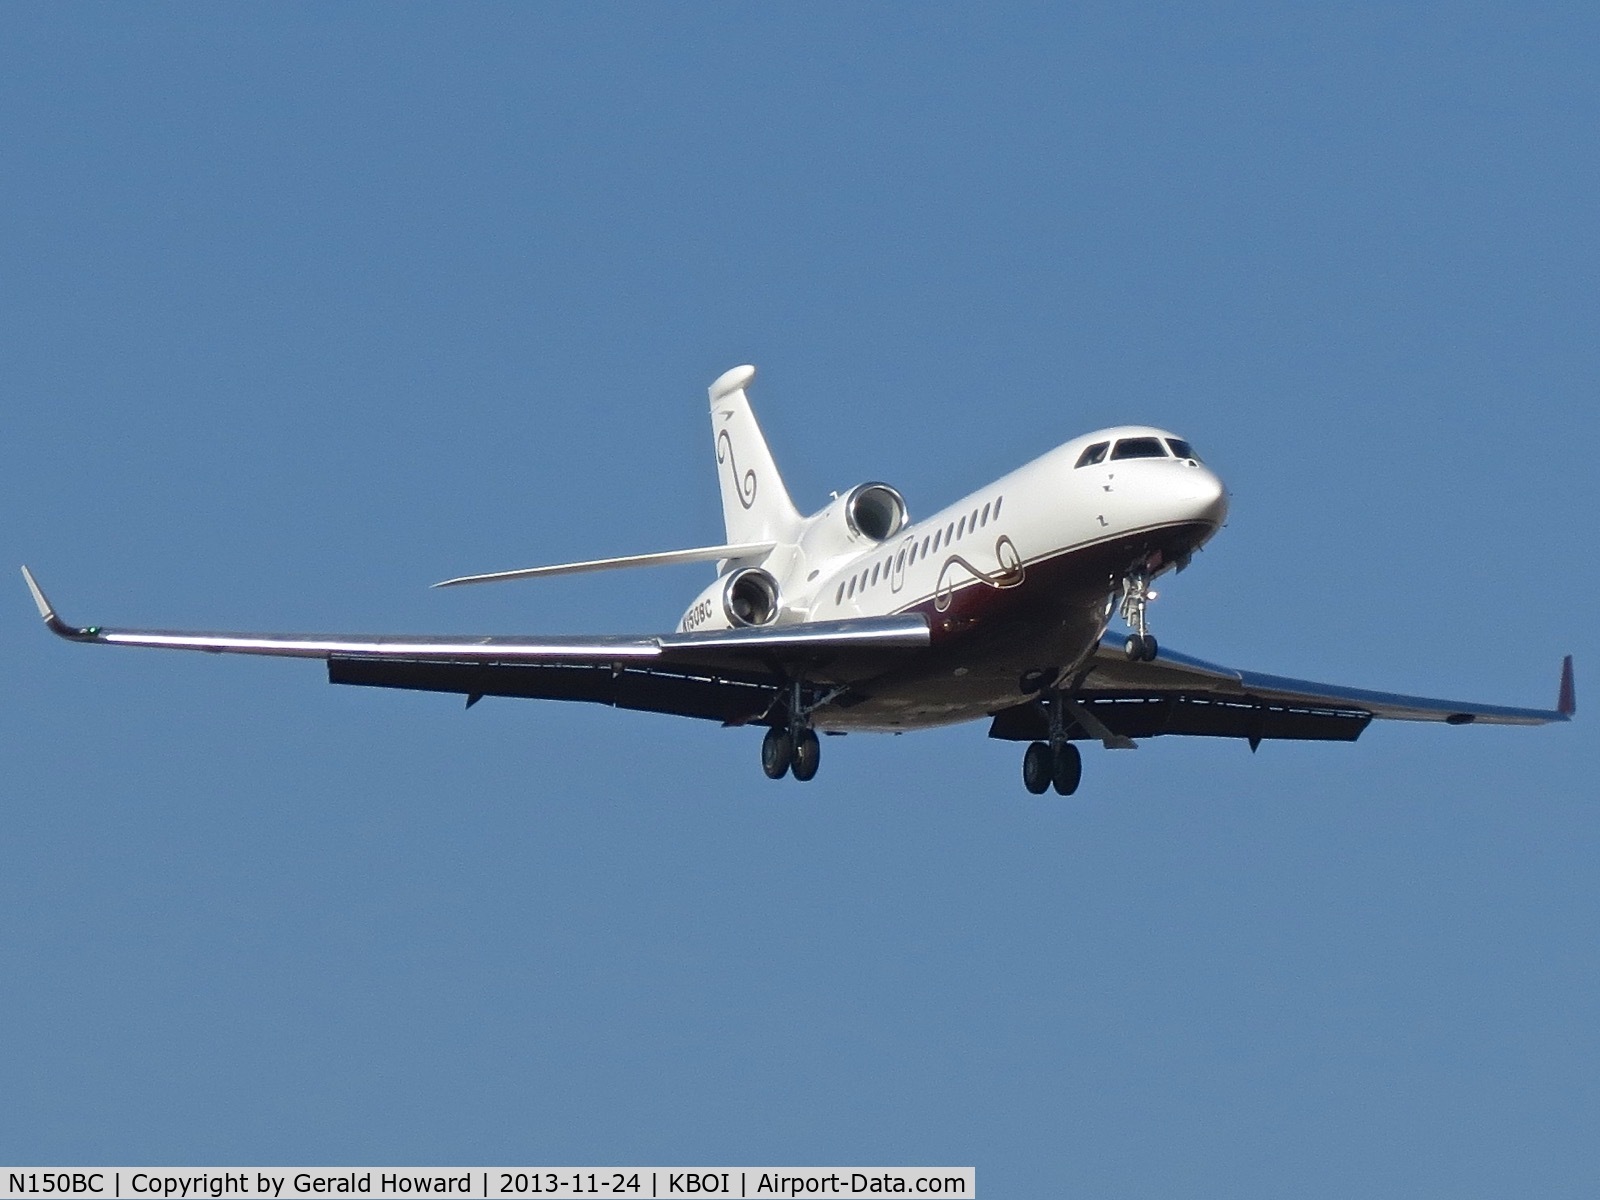 N150BC, 2010 Dassault Falcon 7X C/N 103, On approach for RWY 10R.